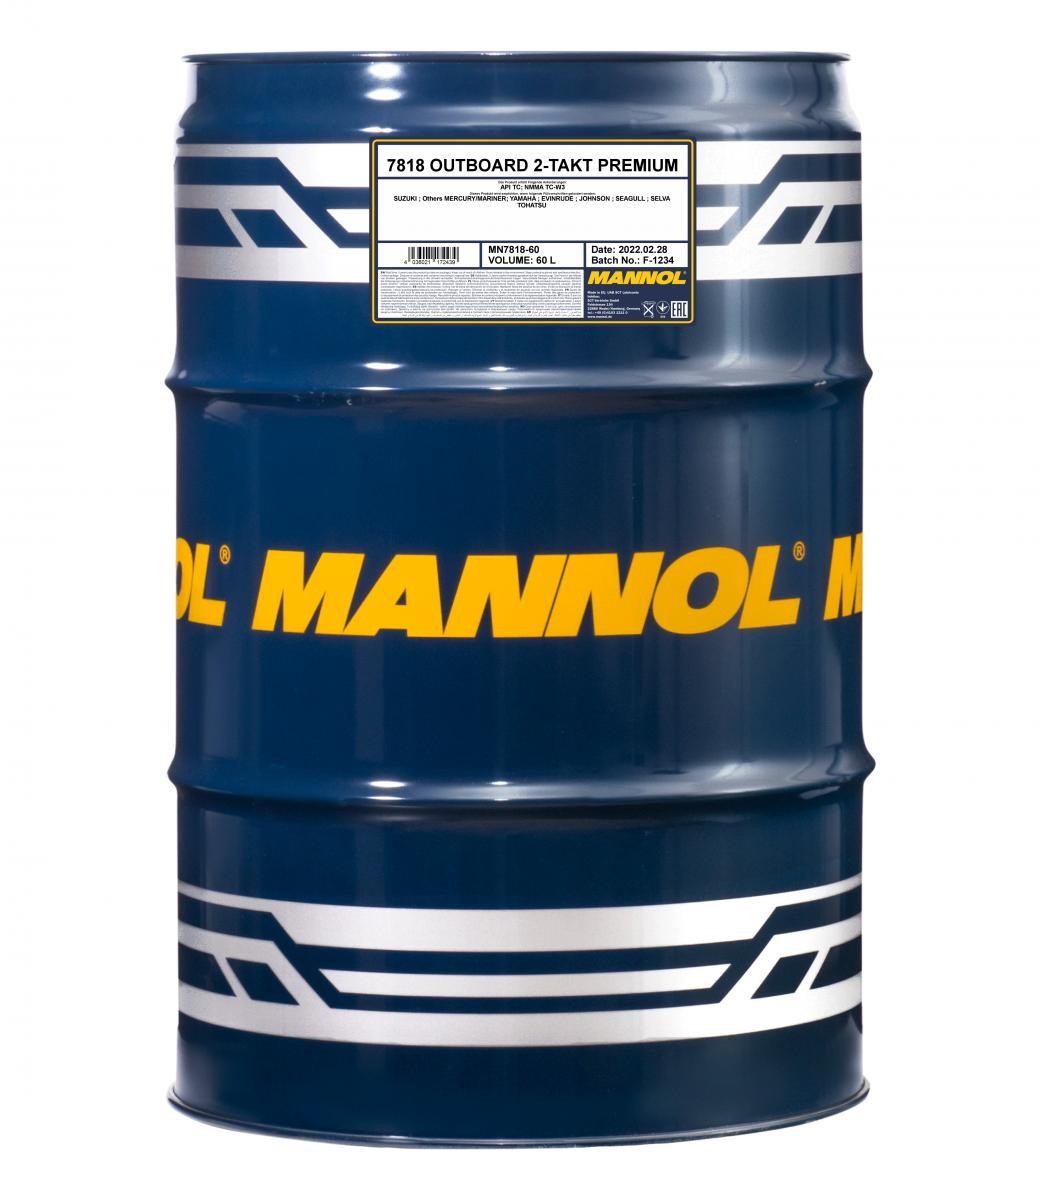 MN7818-60 MANNOL OUTBOARD, 2-Takt Premium 60l, synthetisch Motoröl MN7818-60 günstig kaufen